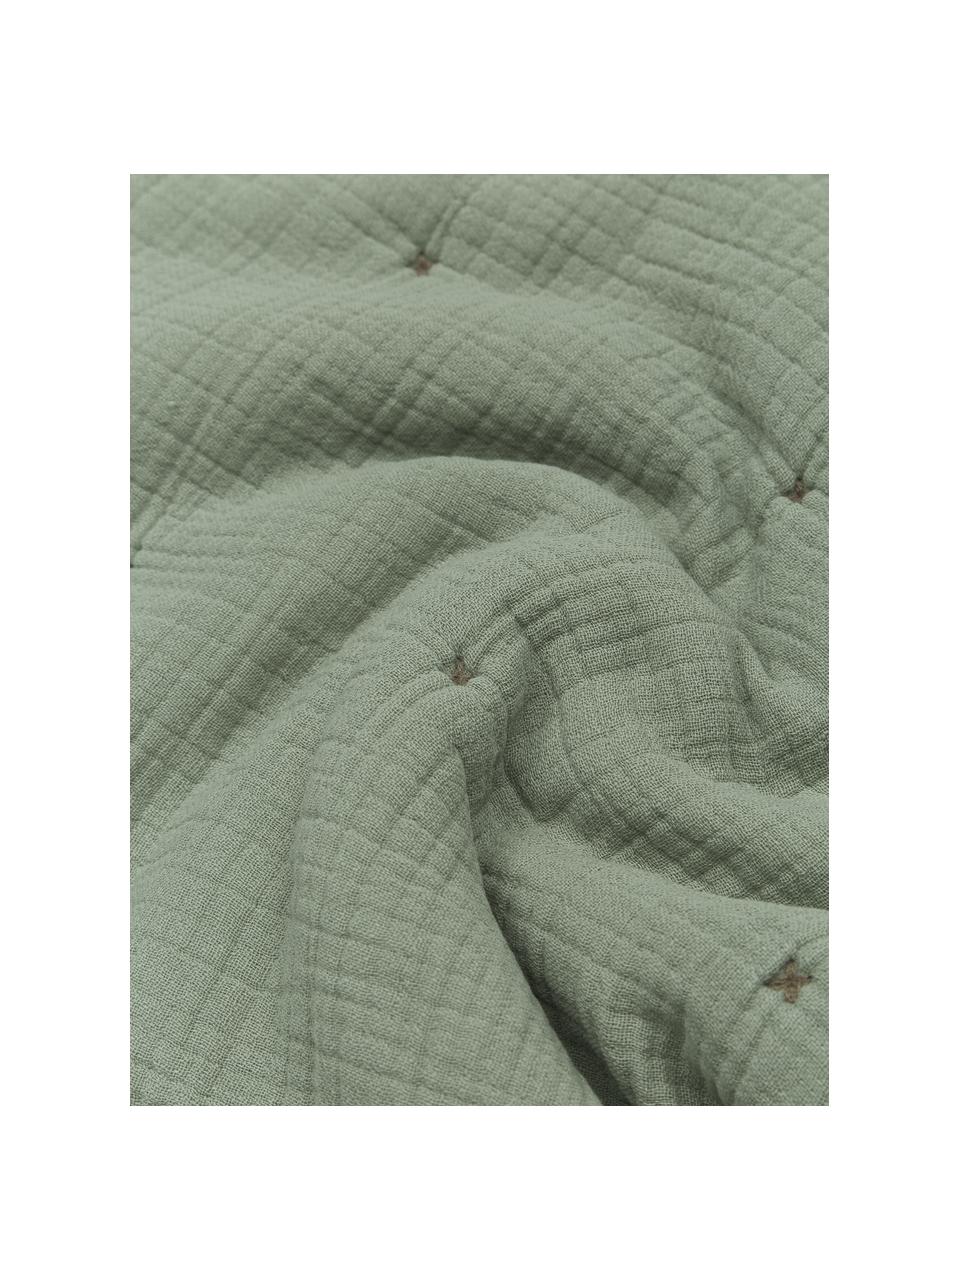 Wattierte Kissenhülle Lune aus Baumwollmusselin in Grün, 100% Baumwolle, Grün, B 45 x L 45 cm